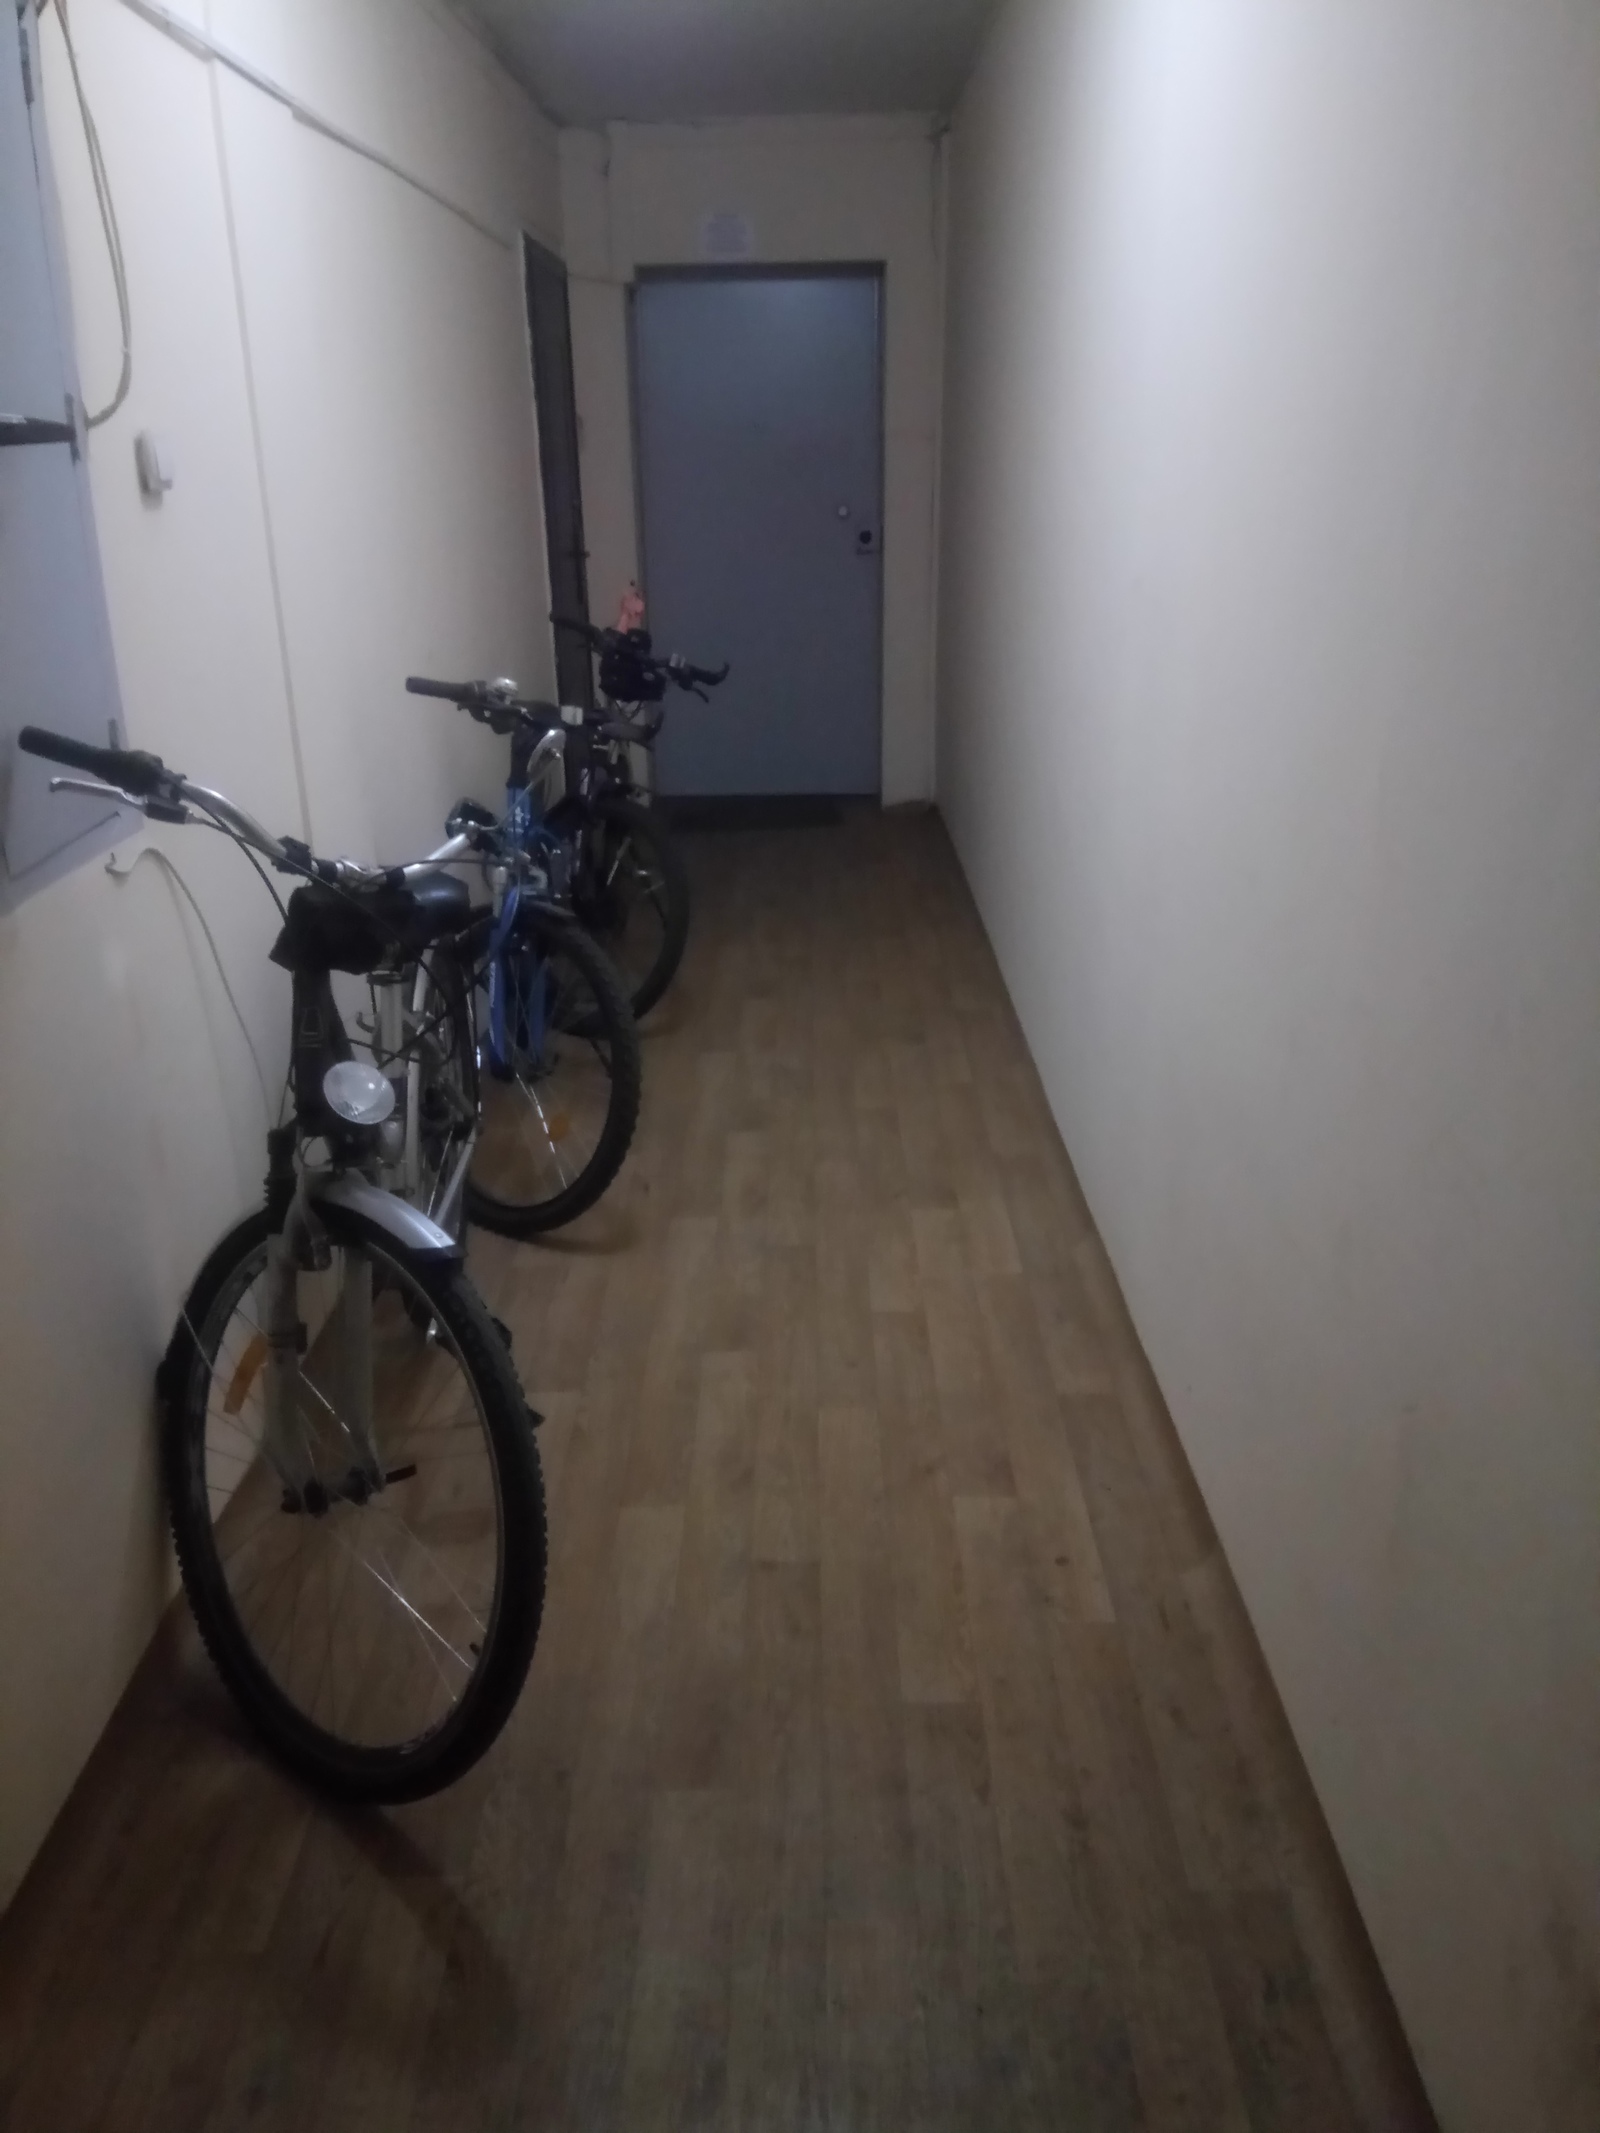 Велосипед в общем коридоре